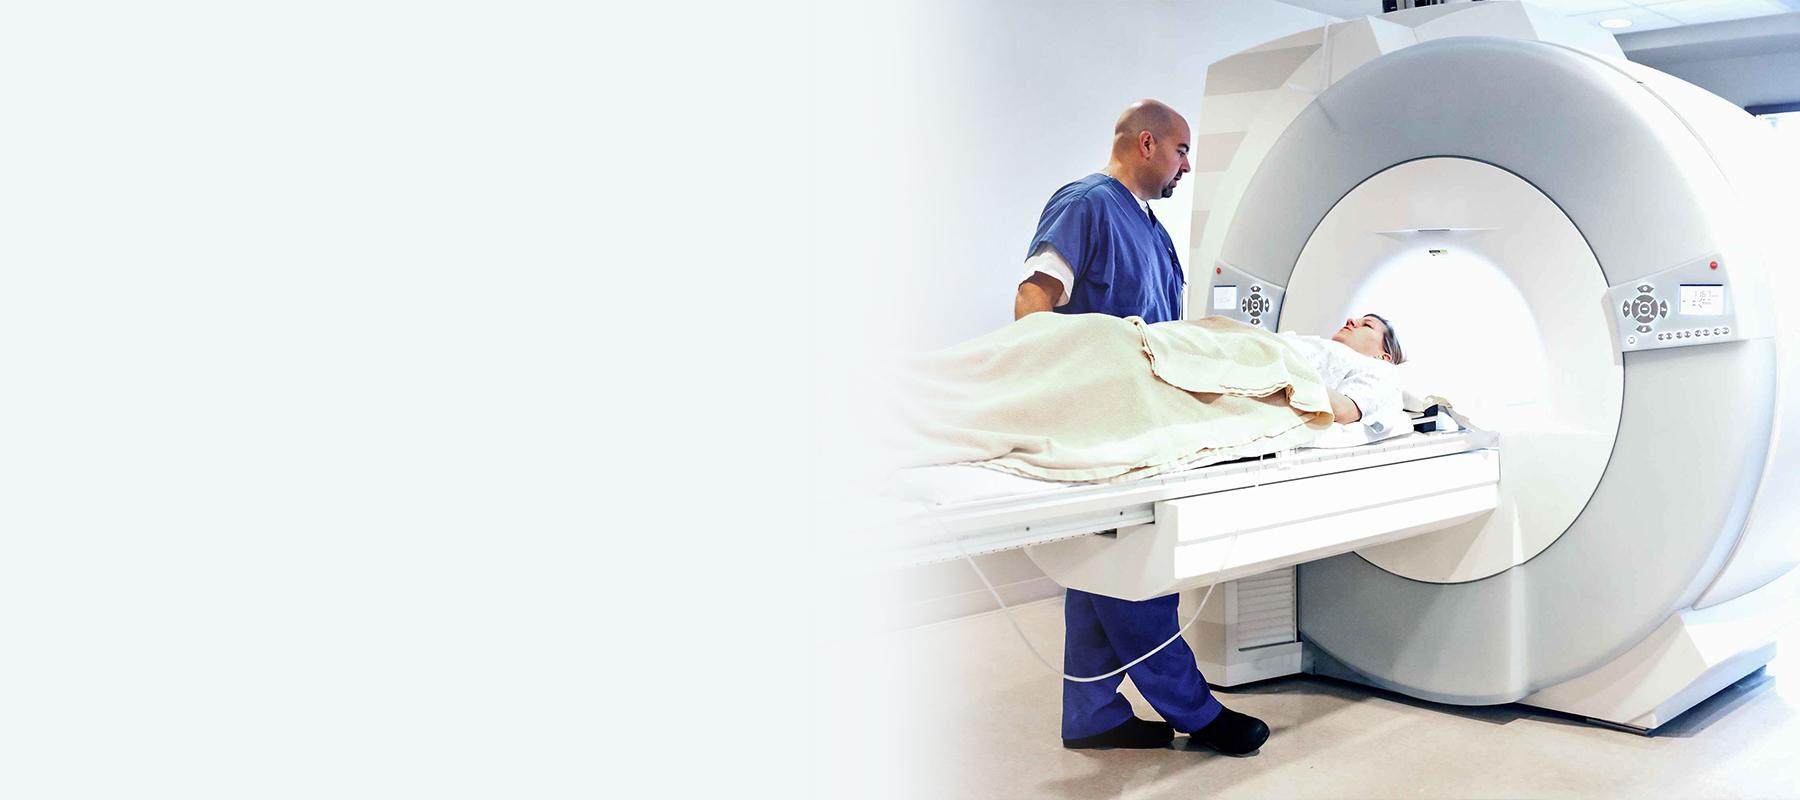 Der Pfleger trägt einen blauen Arbeitskittel und schiebt den Patienten liegend in die MRT-Röhre